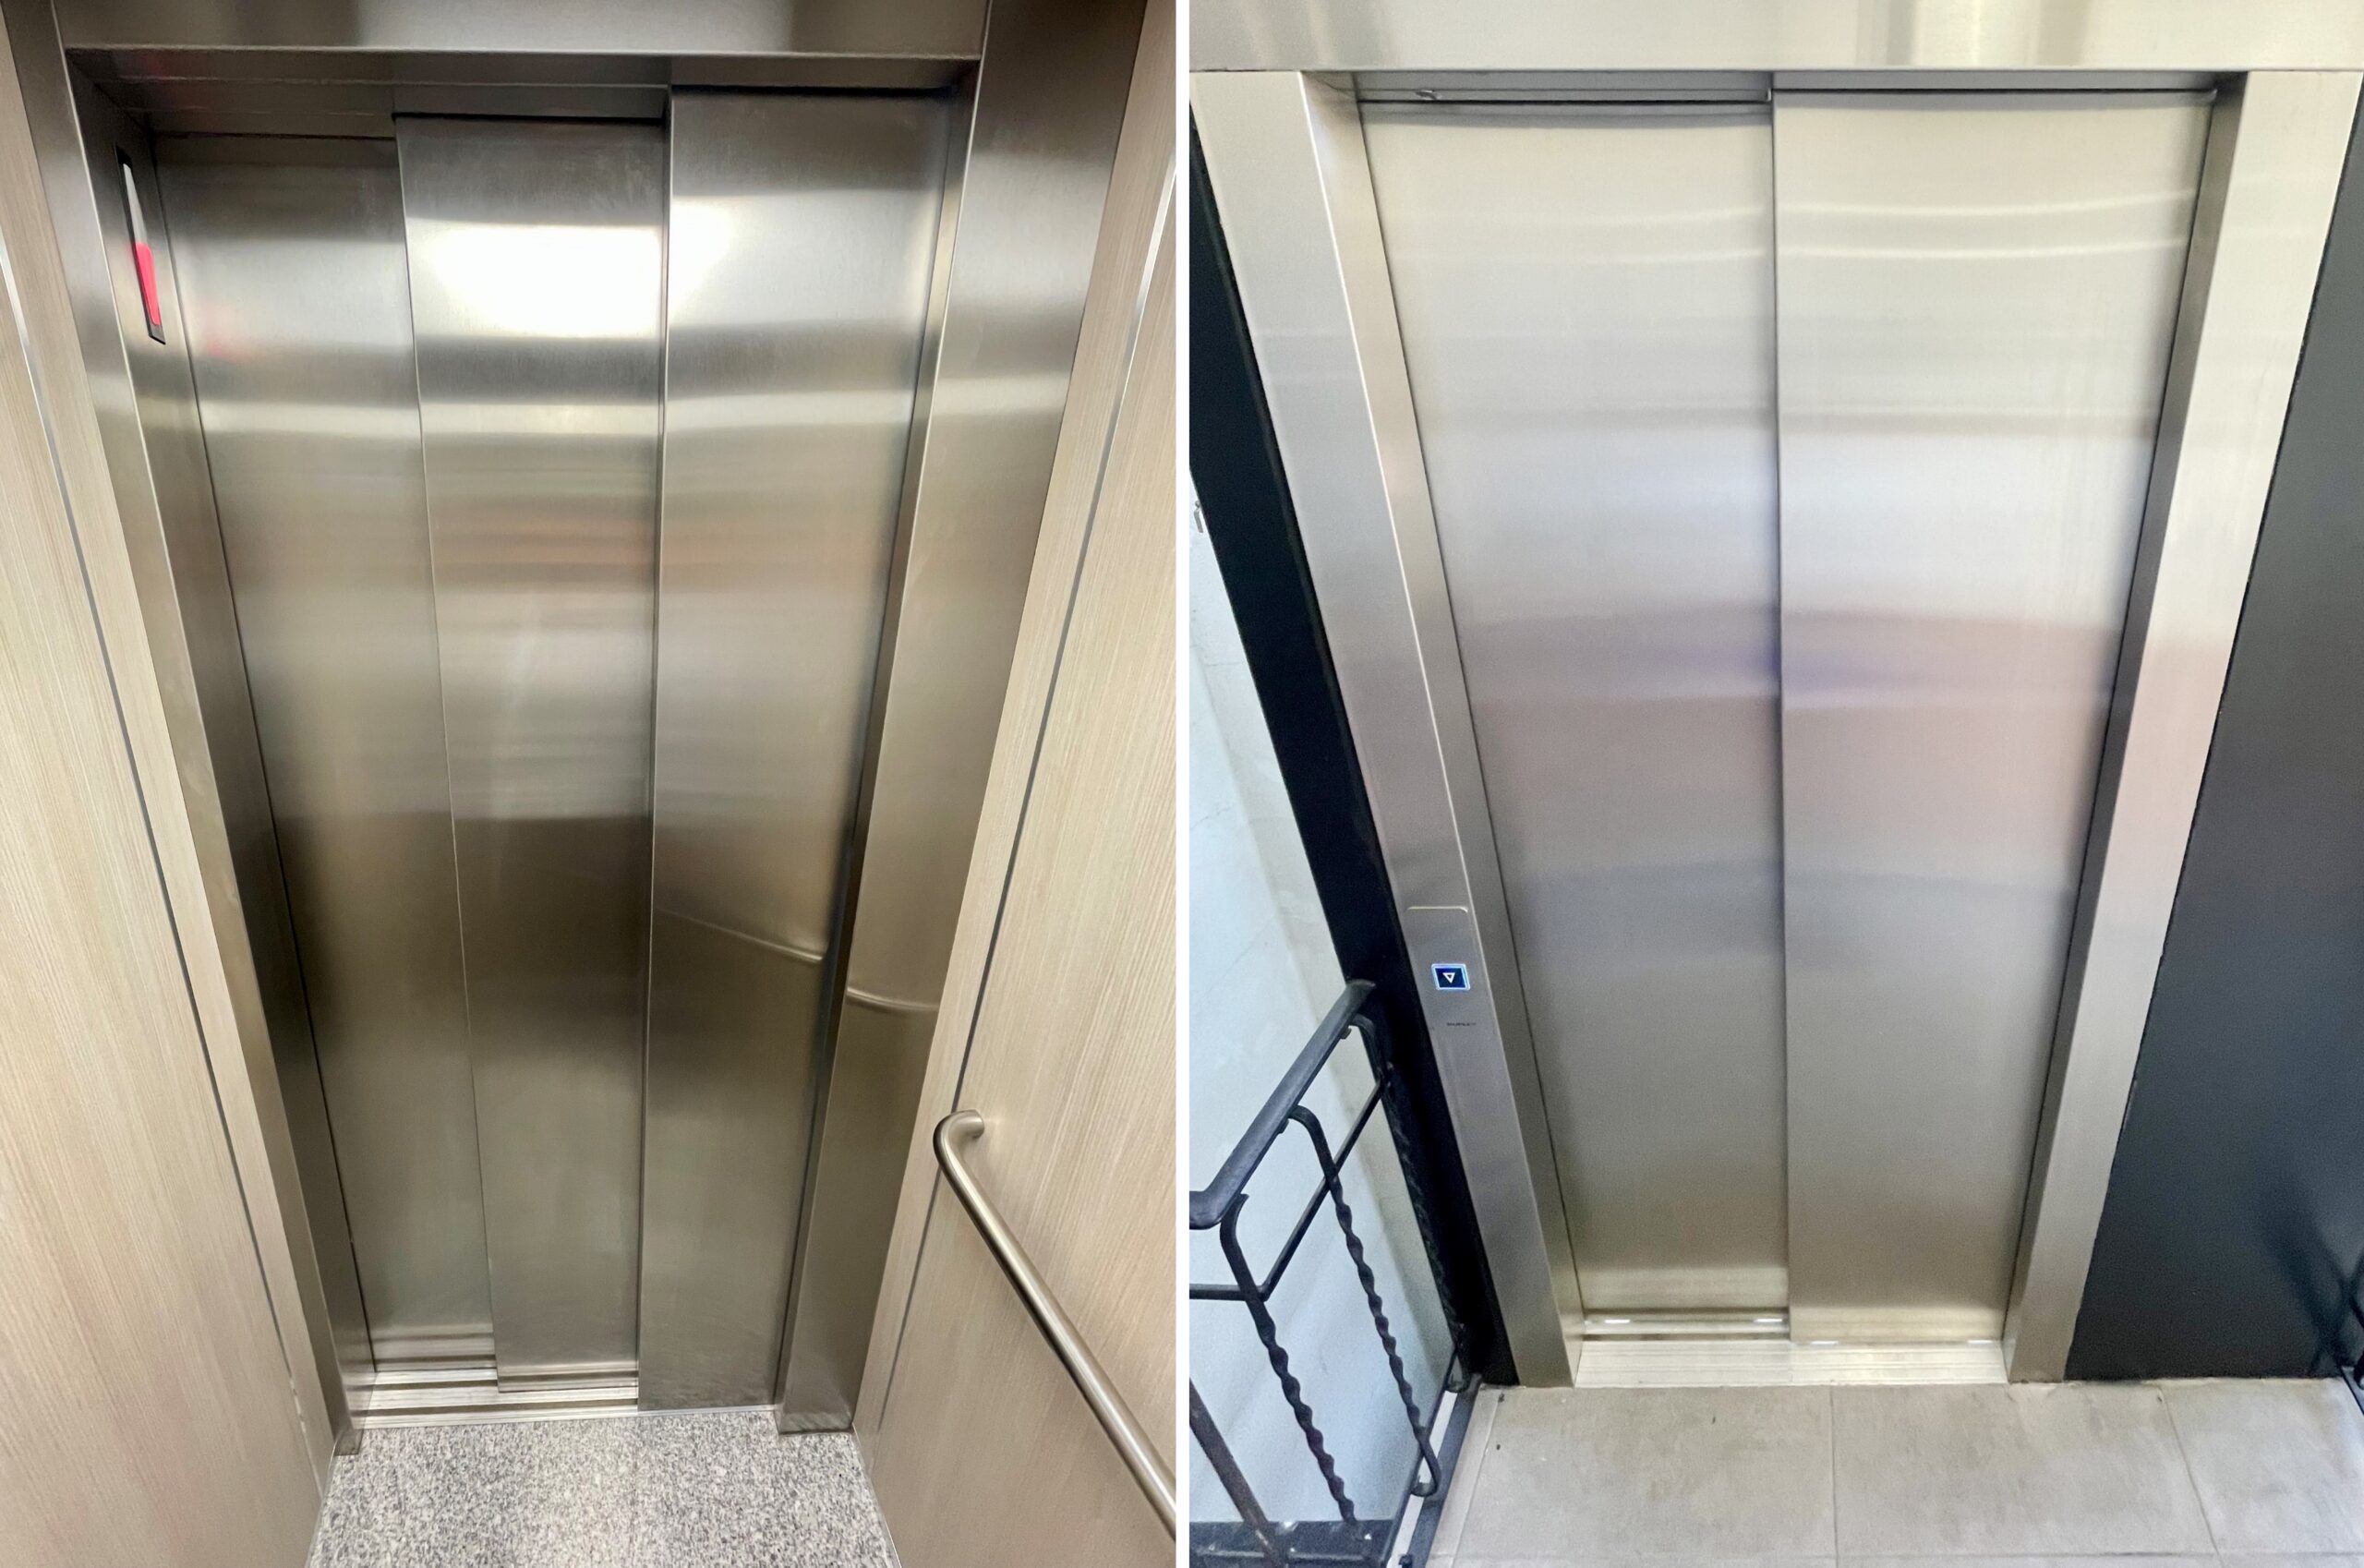 Ejemplos de puertas de cabina y puertas de rellano de ascensores